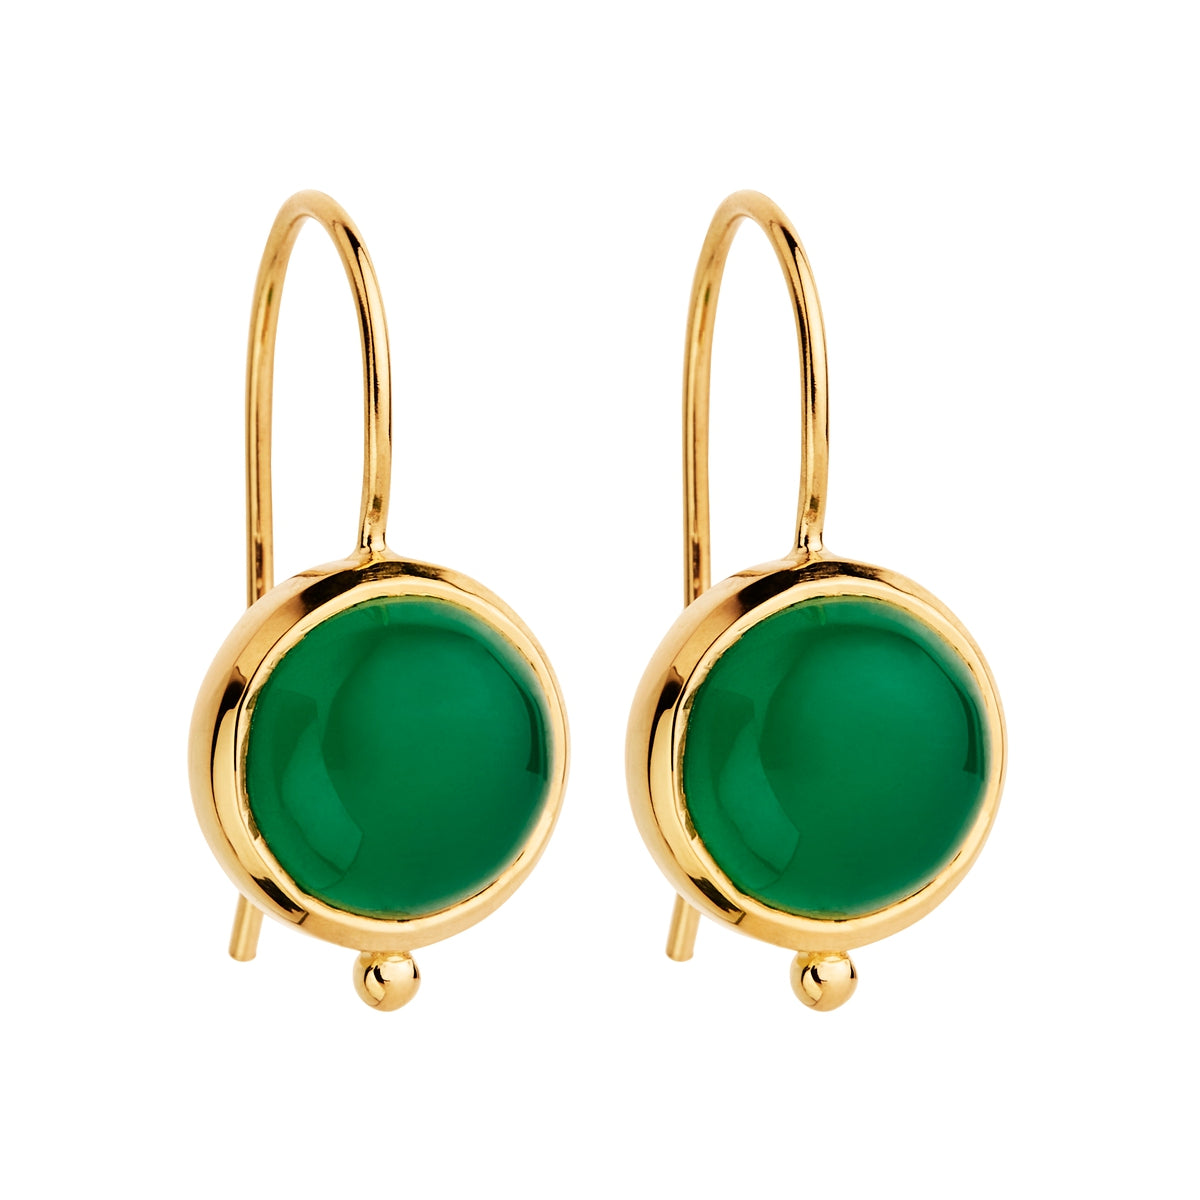 Green Onyx hook earrings